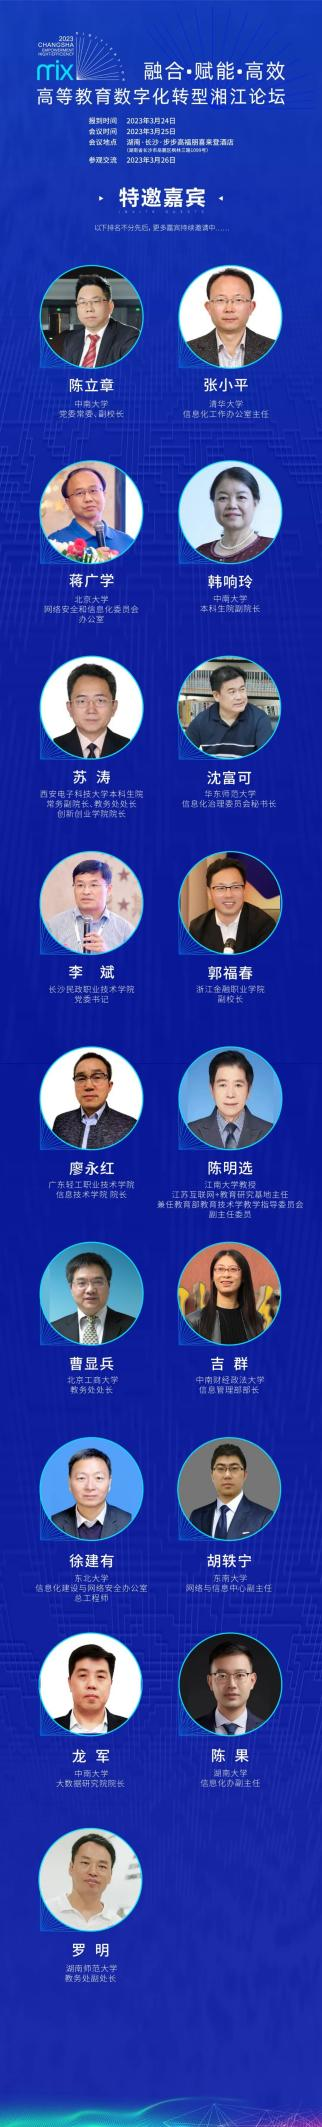 关于举办高等教育数字化转型湘江论坛的通知